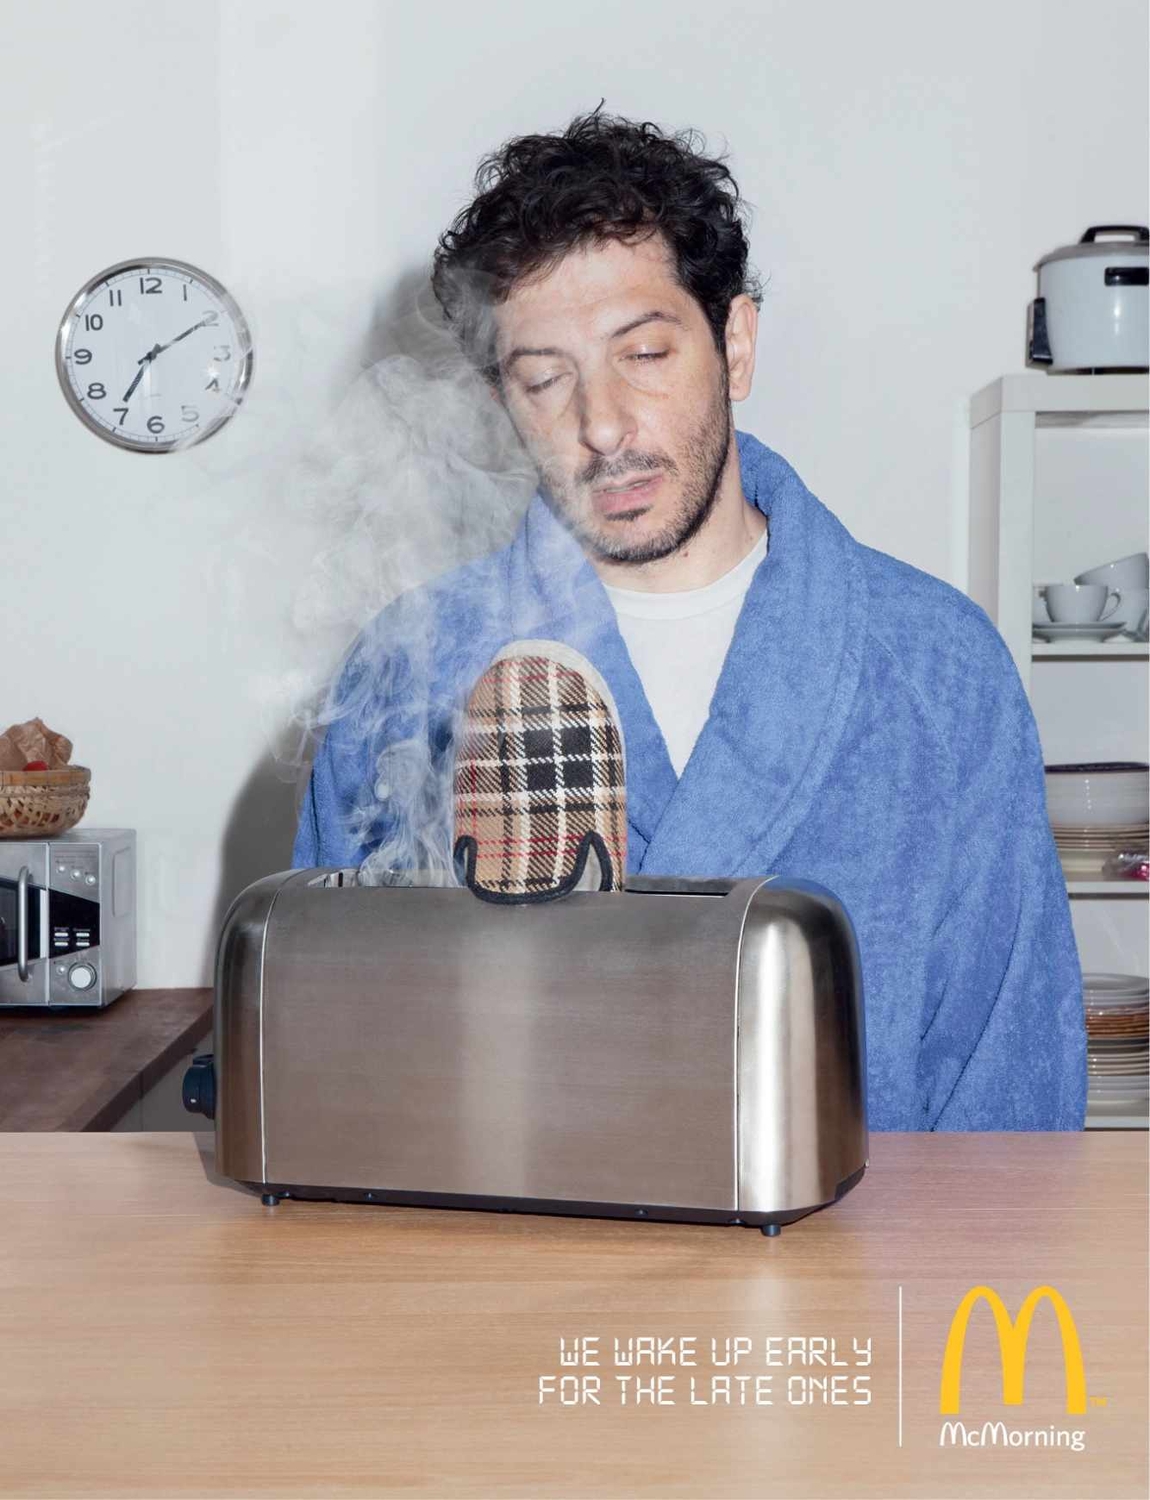 McDonald’s продвигает серию завтраков в серии постов, в которых напоминает потребителям, что сеть фаст-фуда открывается рано.